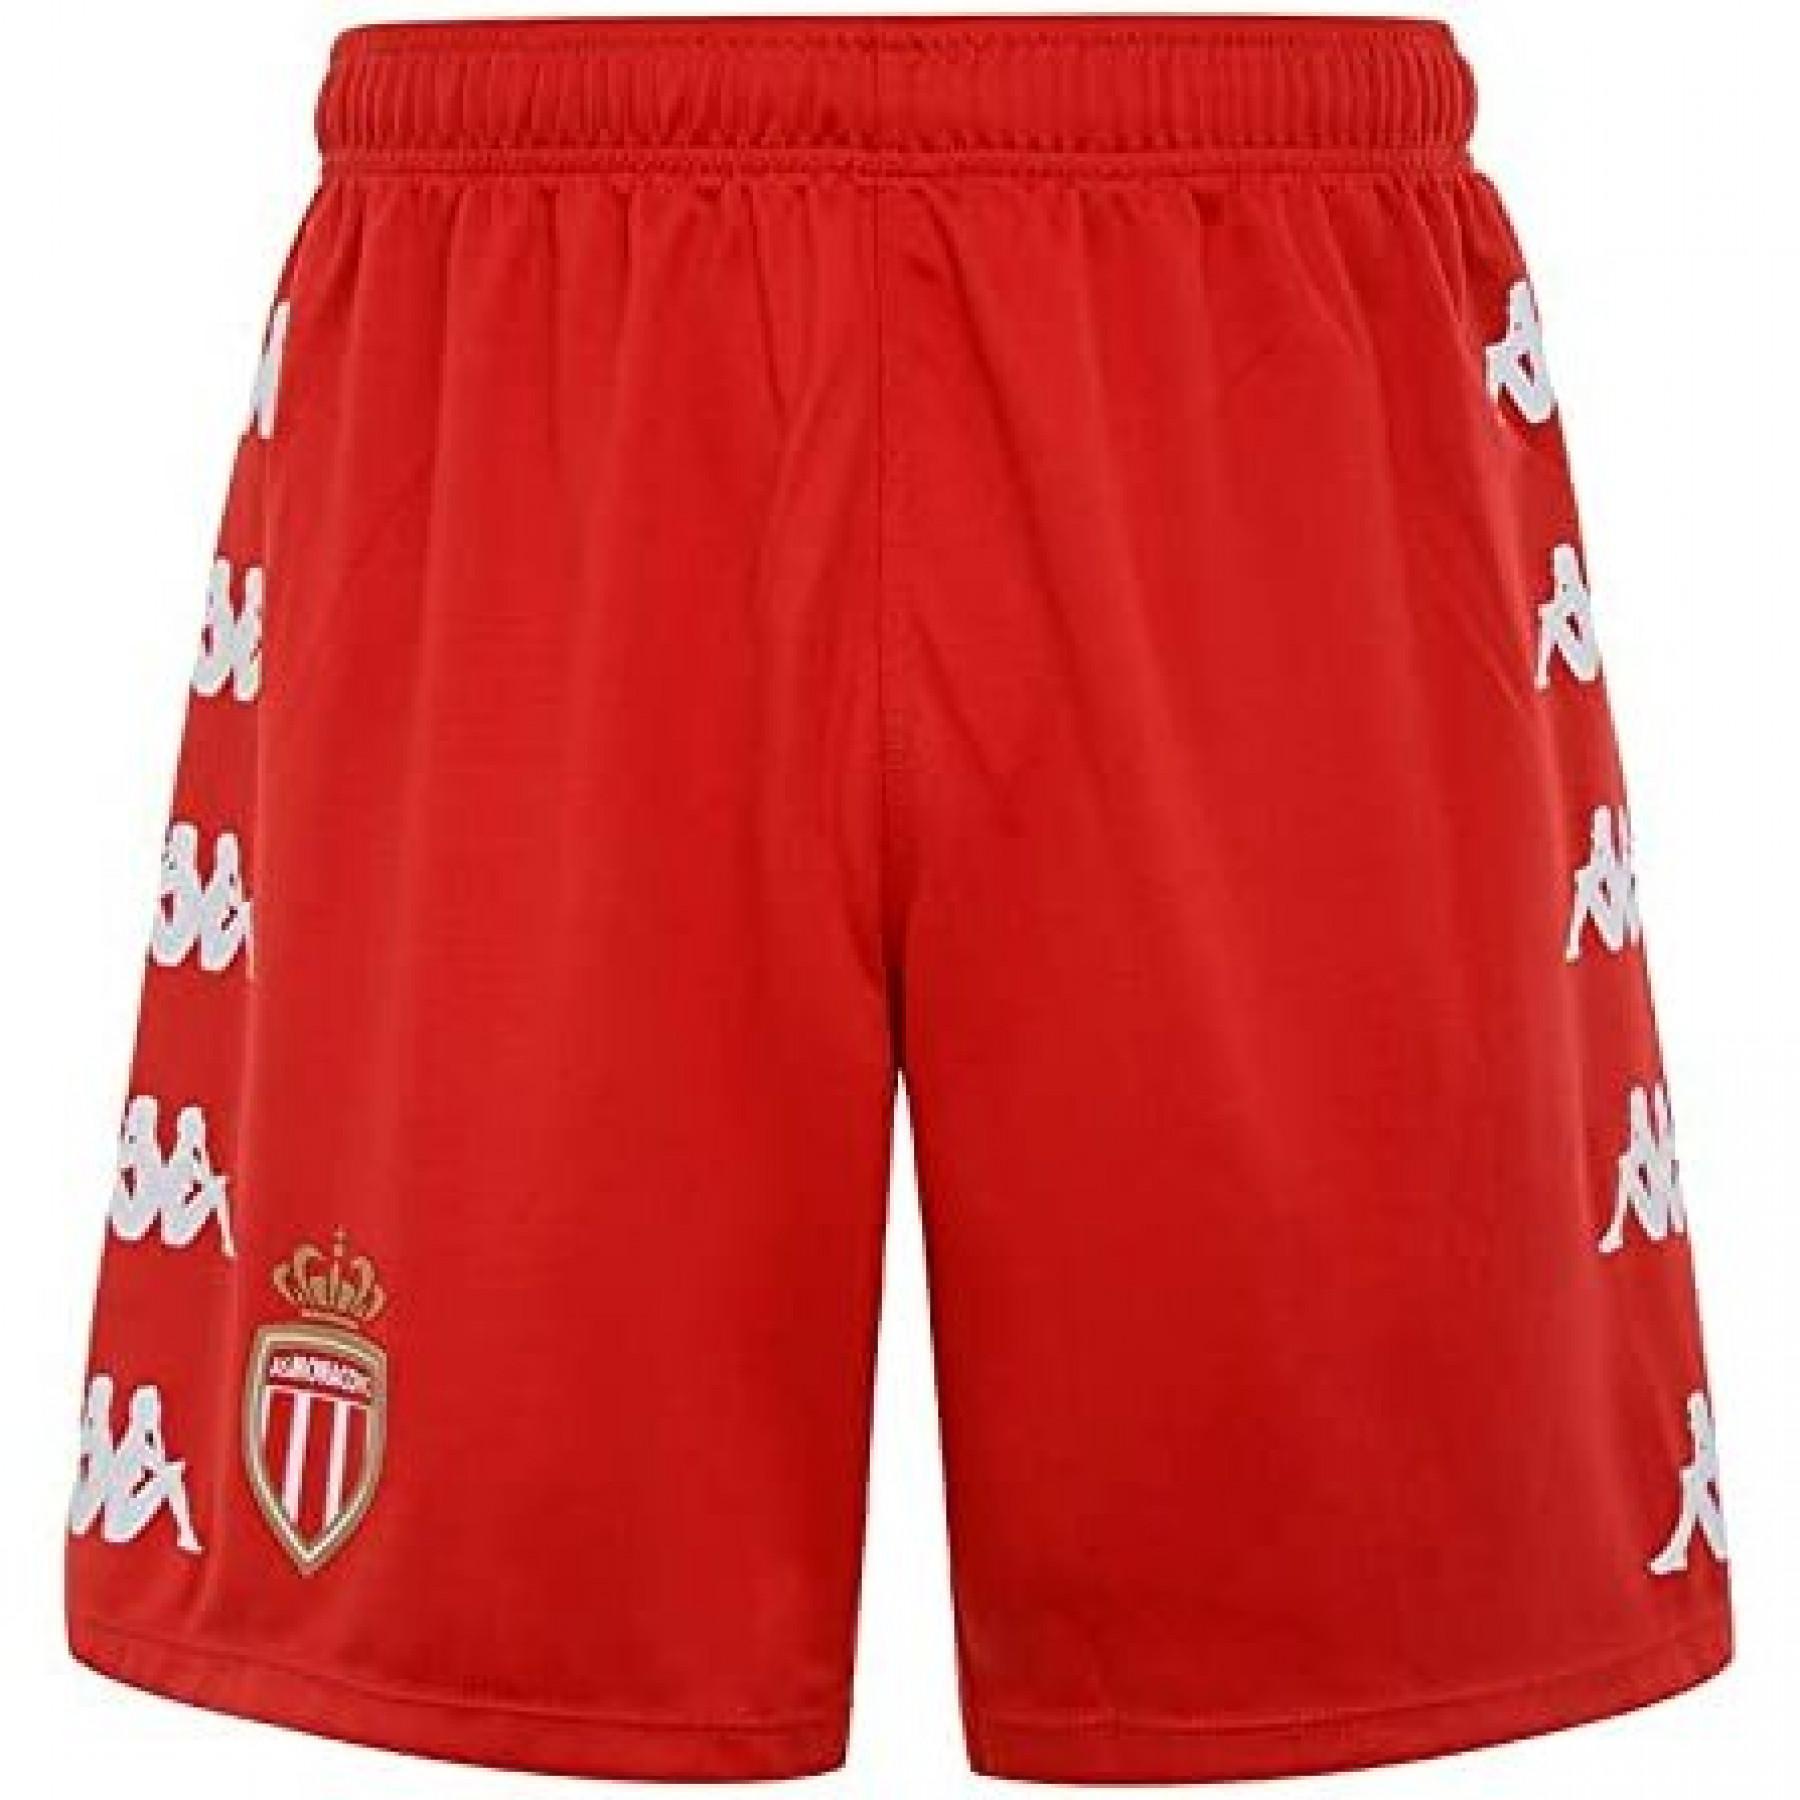 Outdoor shorts AS Monaco 2020/21